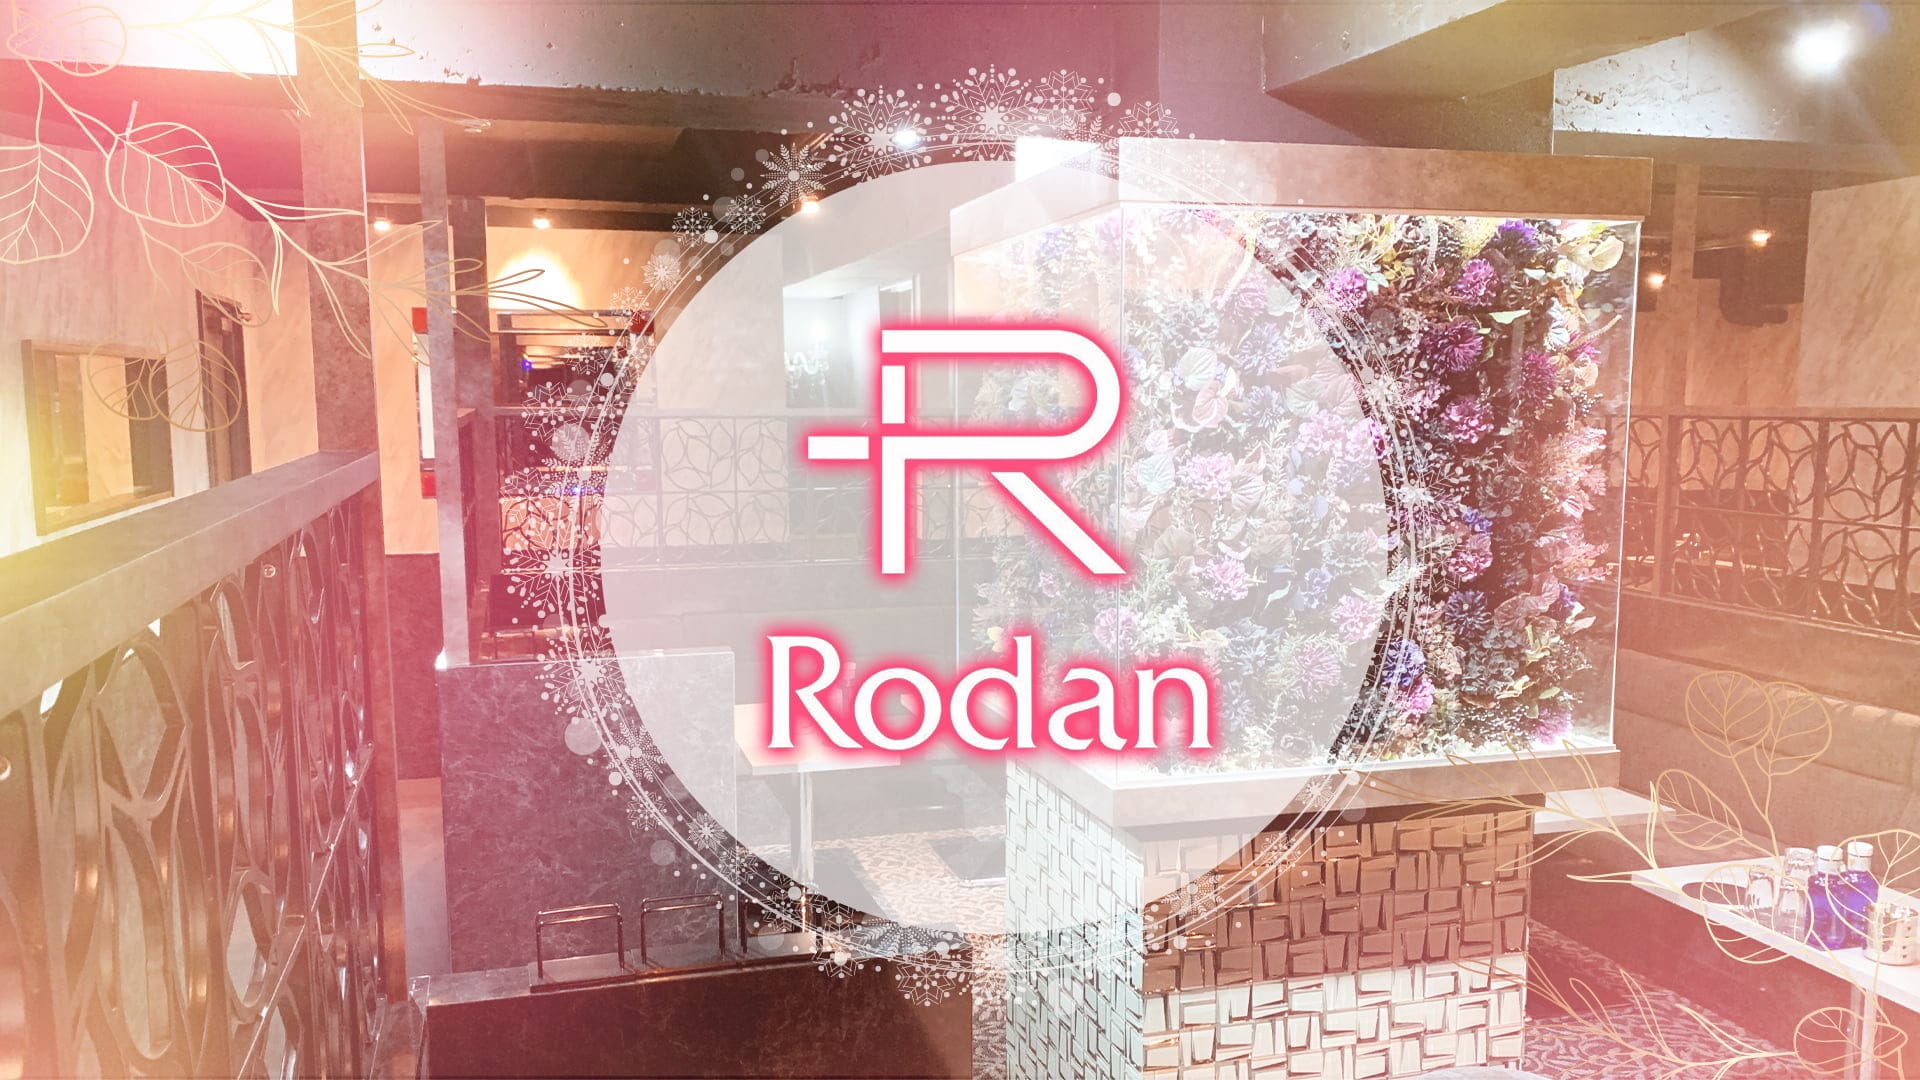 Club Rodan（ロダン）【公式体入・求人情報】 本厚木キャバクラ TOP画像